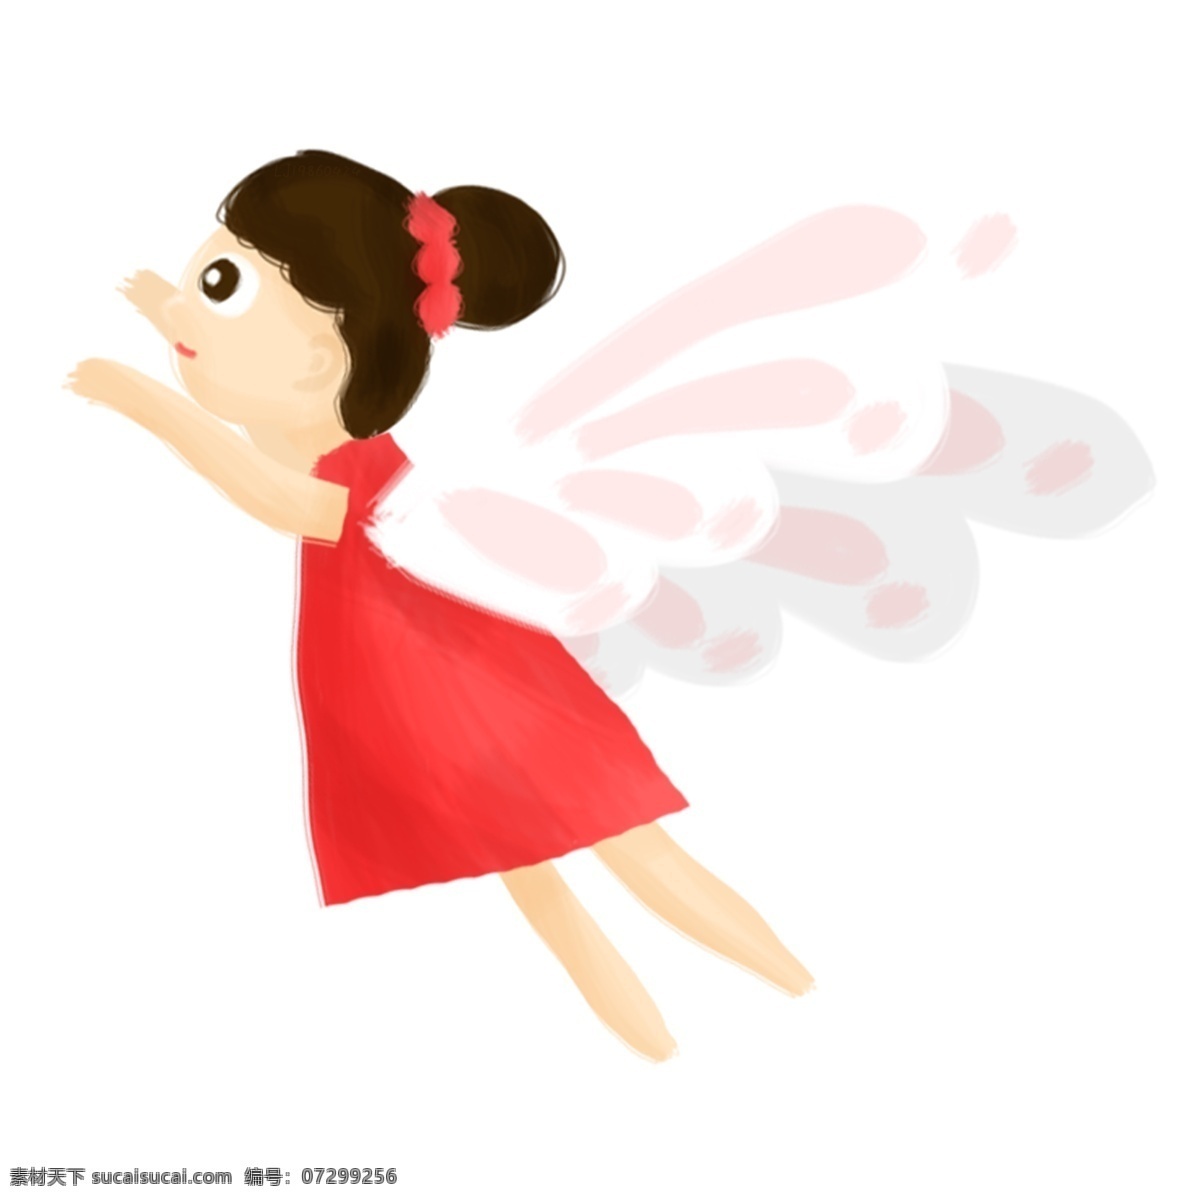 红 裙 精灵 女孩 手绘 插画 红裙 翅膀 丸子头 可爱 卡通 飞翔 夏季 春季 清新 唯美